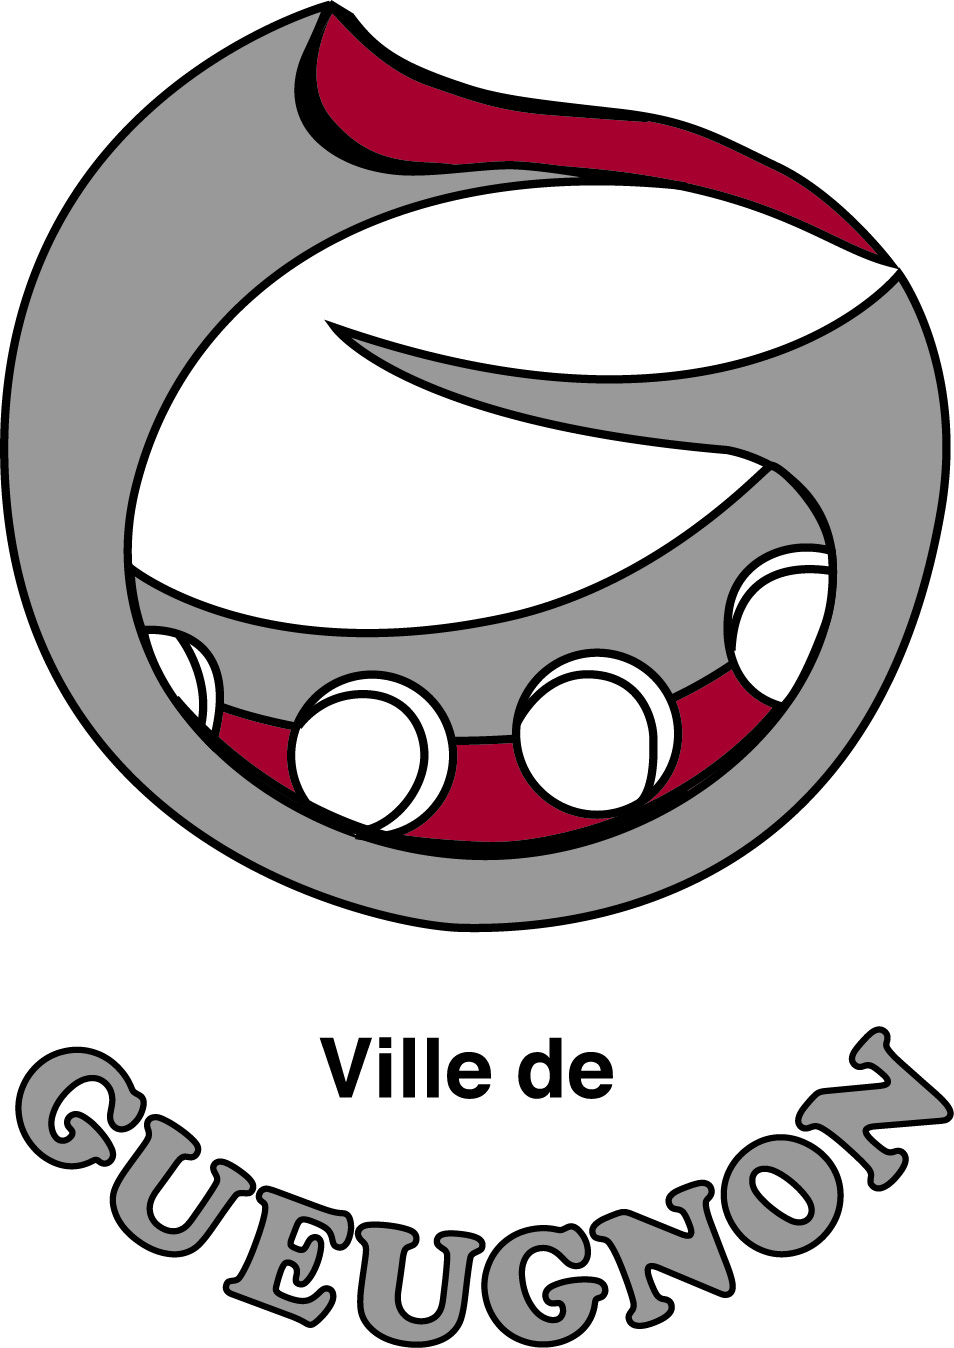 Logo Ville de Gueugnon